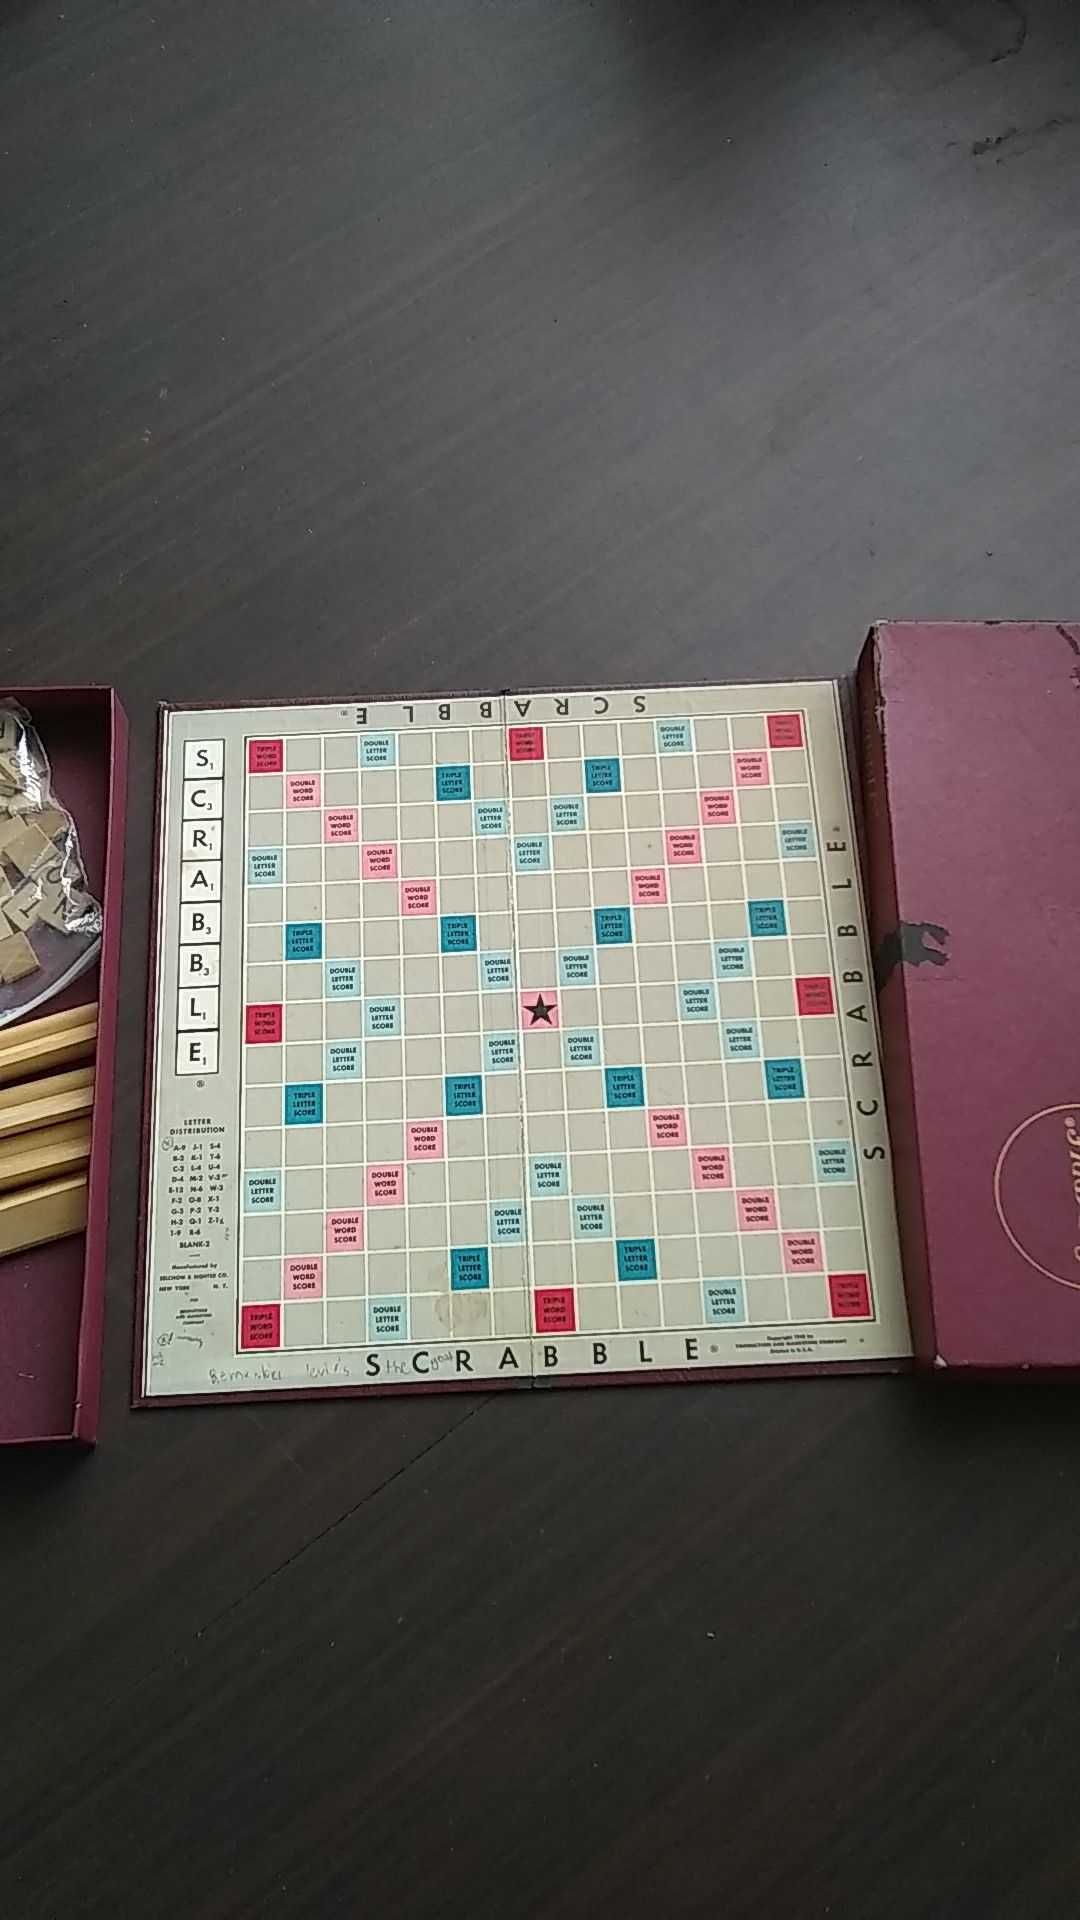 Scrabble board game